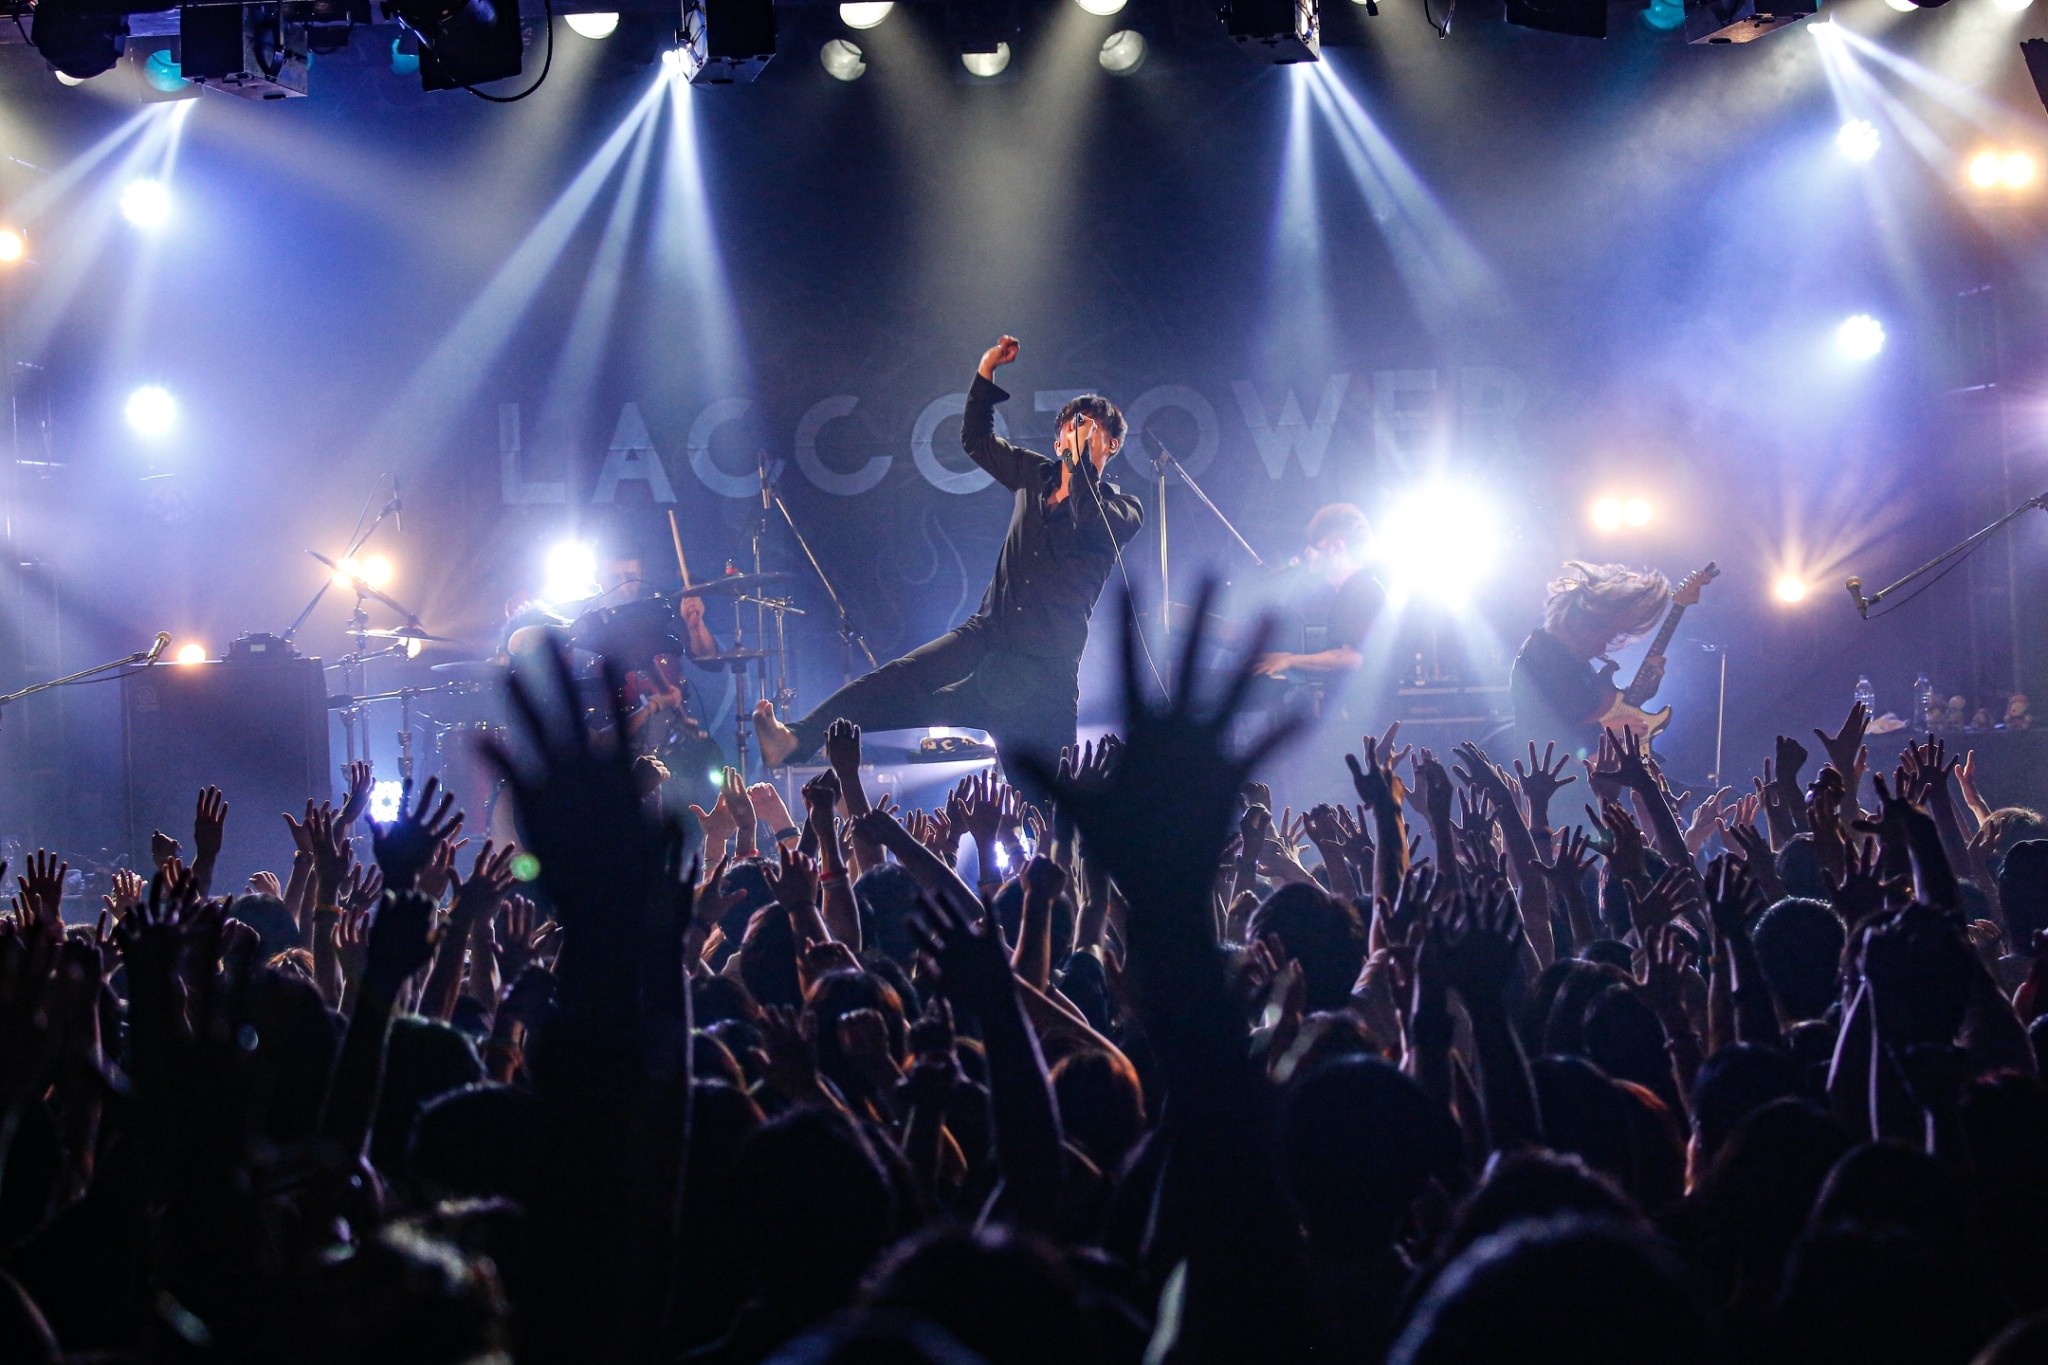 LACCO TOWER、結成17周年・恵比寿LIQUIDROOM公演で新曲「若者」ライブ初披露 セットリストのプレイリストも公開に